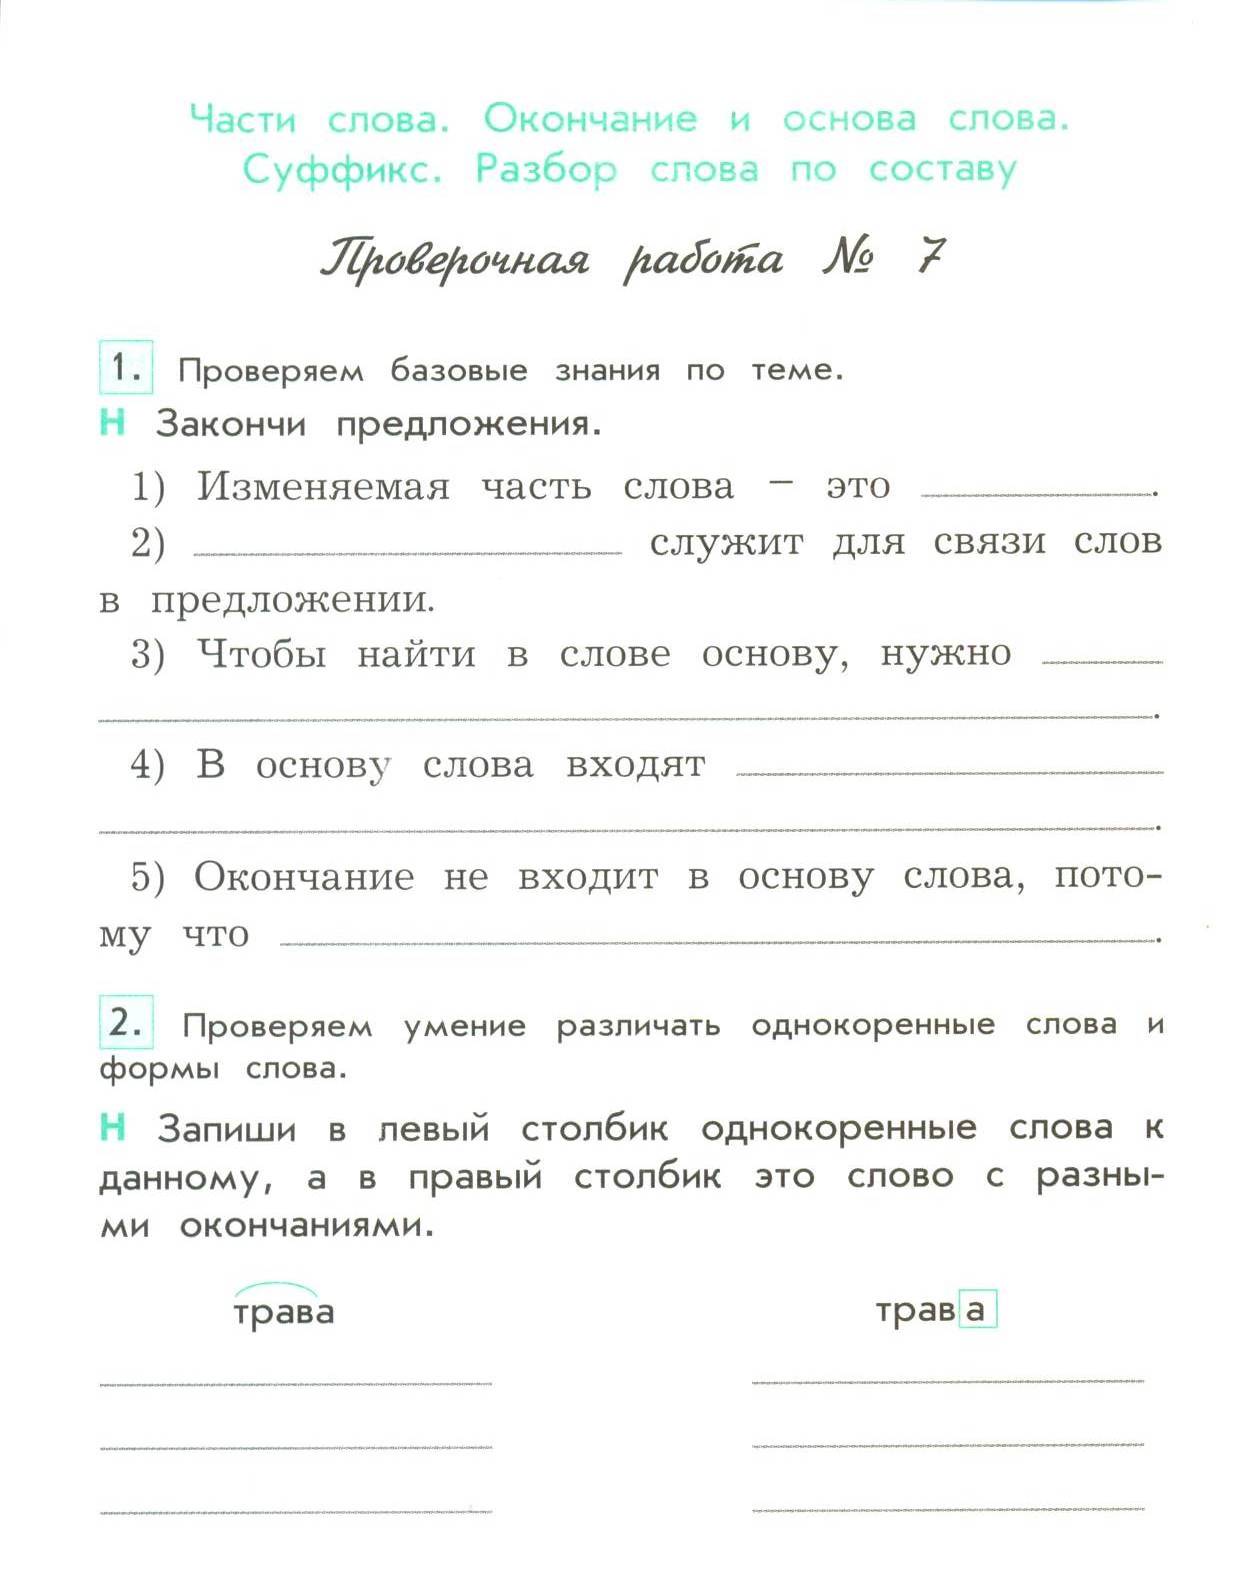 Контрольно-измерительные материалы по русскому языку для 3 класса